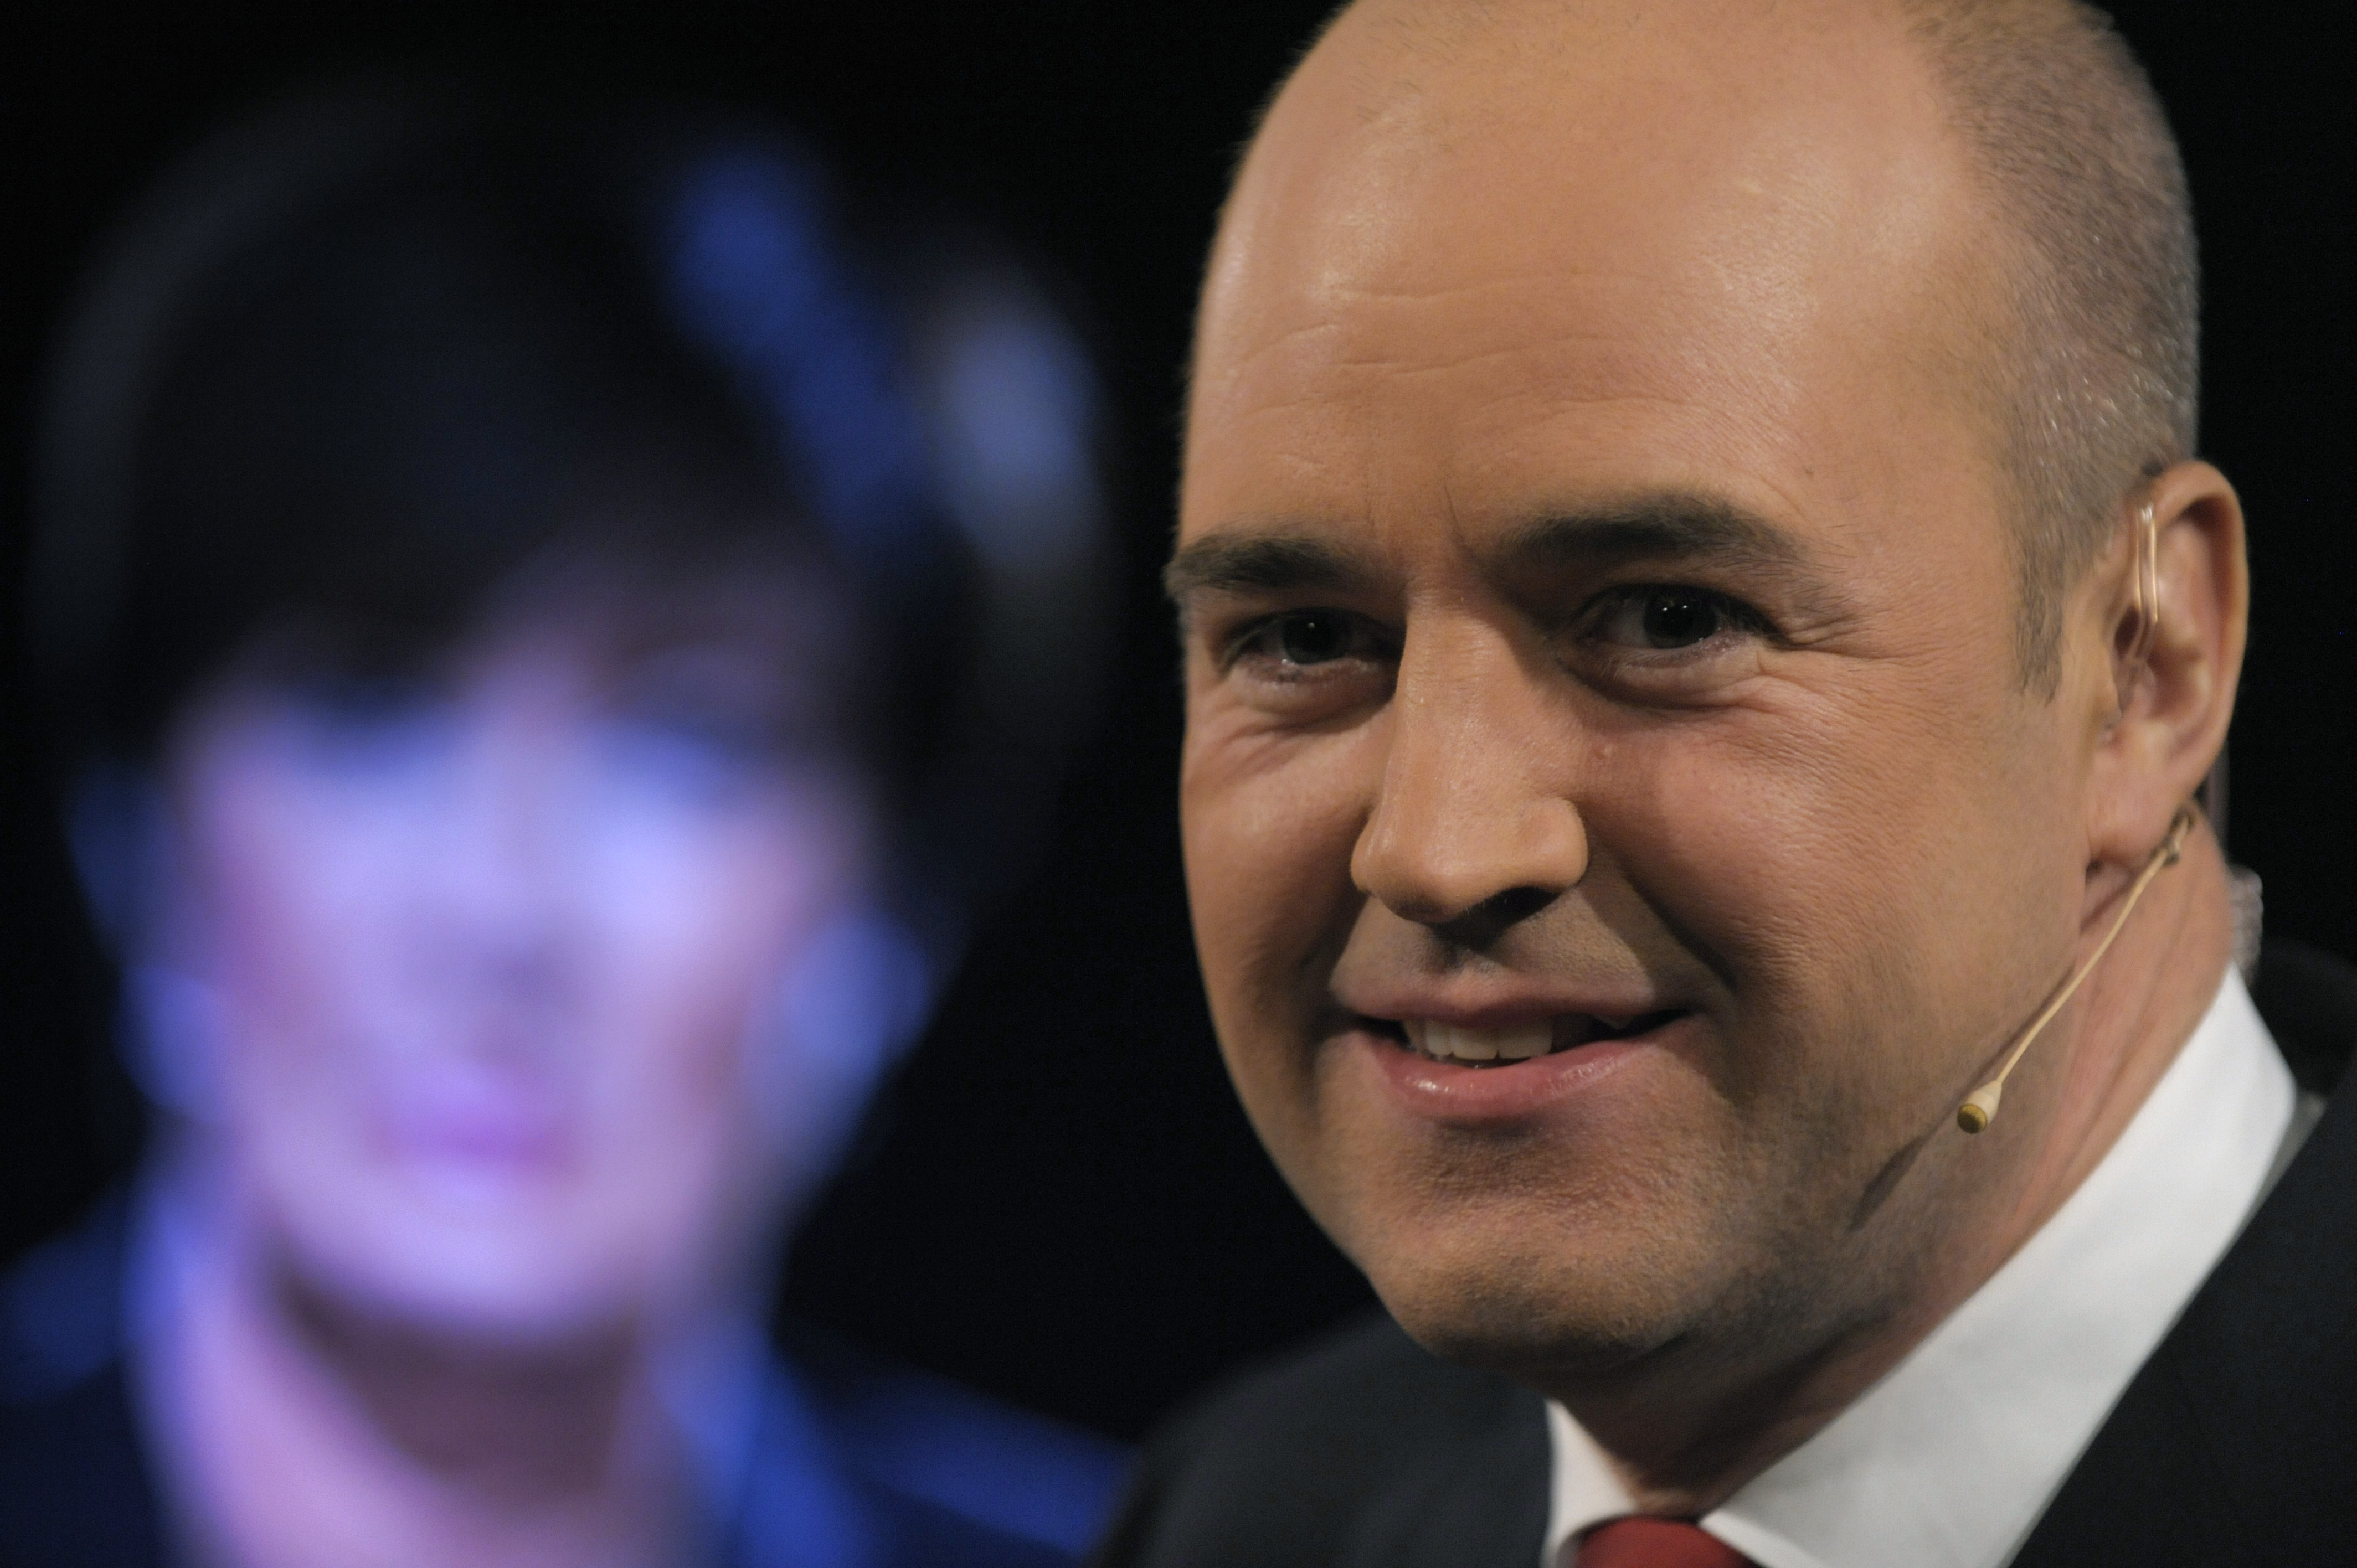 Riksdagsvalet 2010, Fredrik Reinfeldt, Alliansen